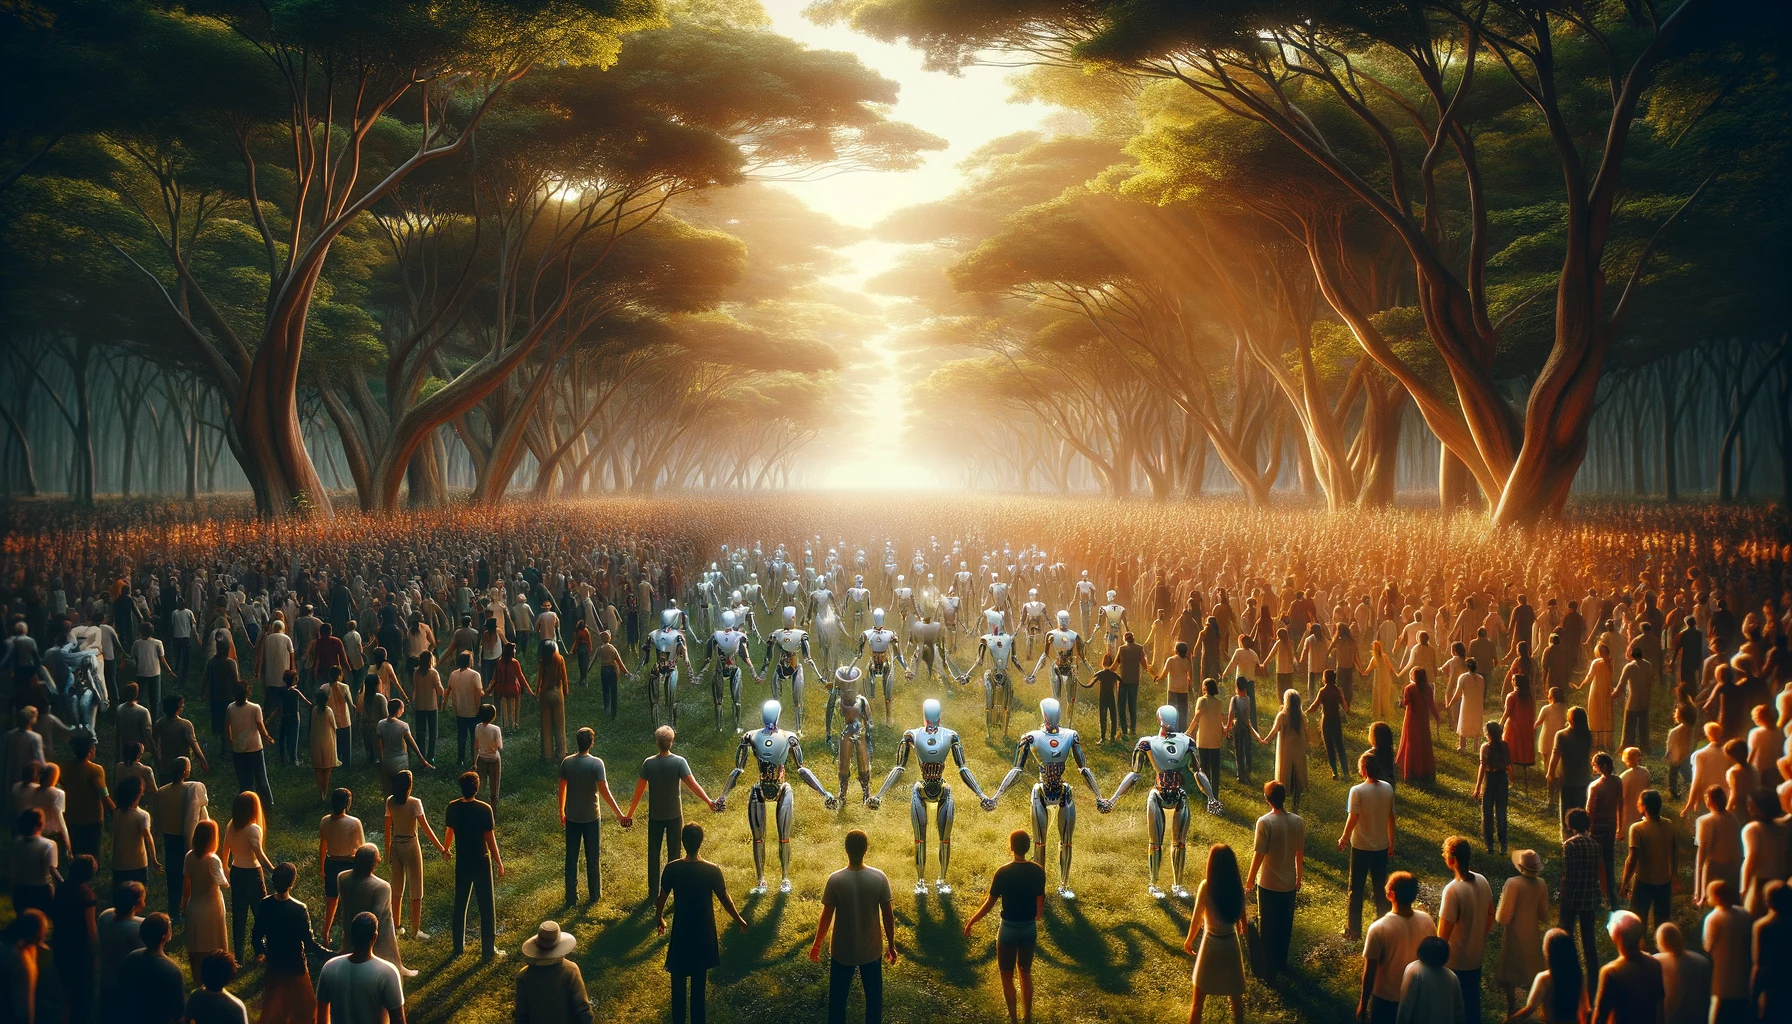 cena cinemática e épica, bem iluminada com uma multidão de pessoas e robôs humanóides que se parecem com pessoas de mãos dadas em um lugar que tenha natureza